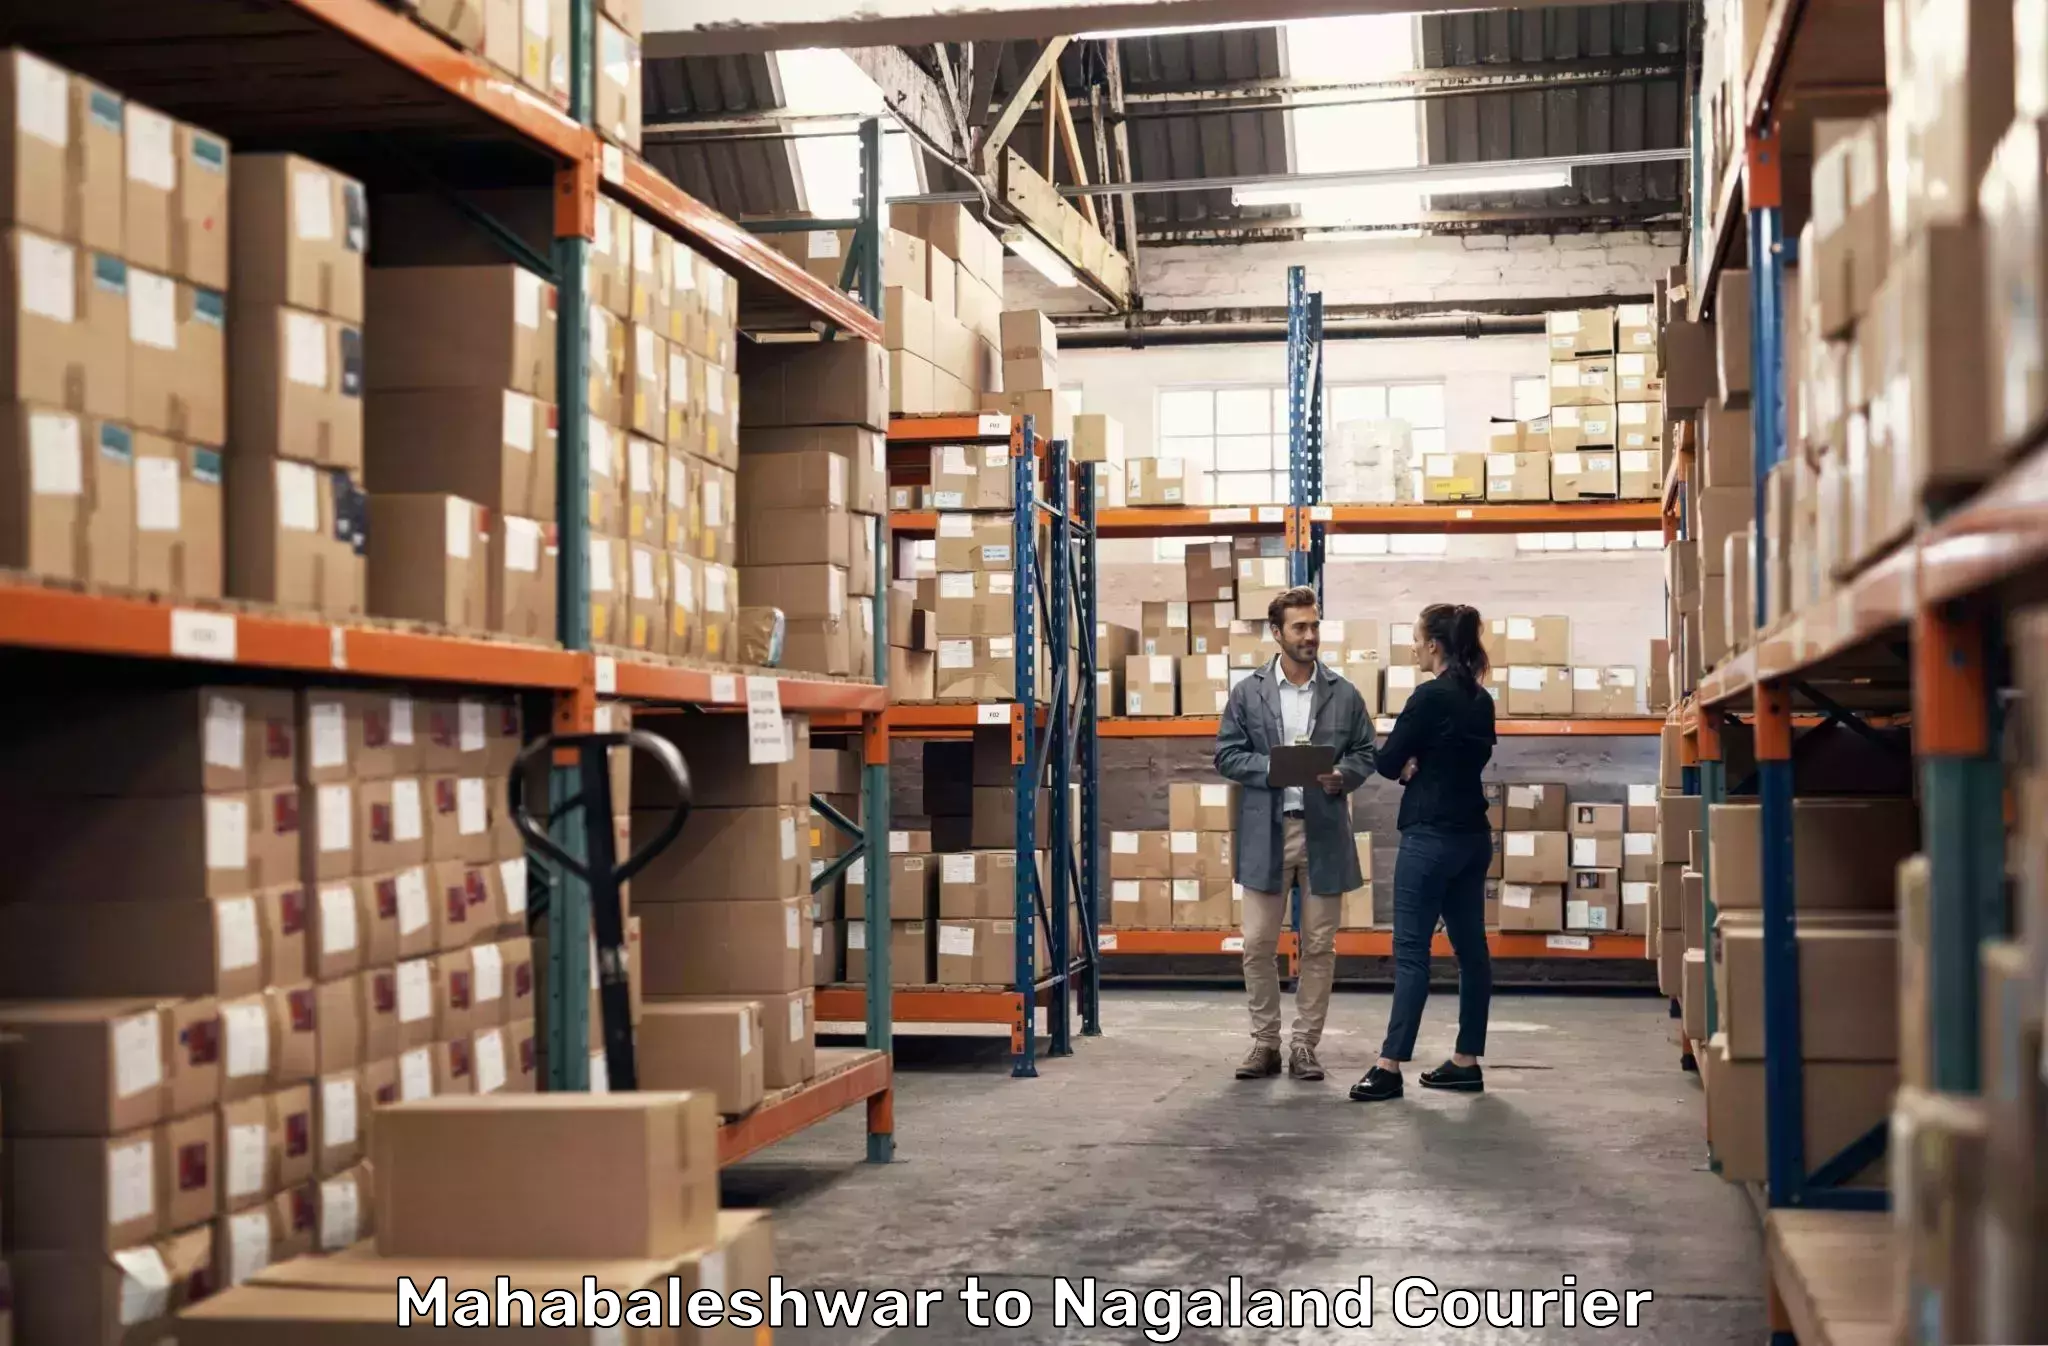 Express logistics providers Mahabaleshwar to Nagaland